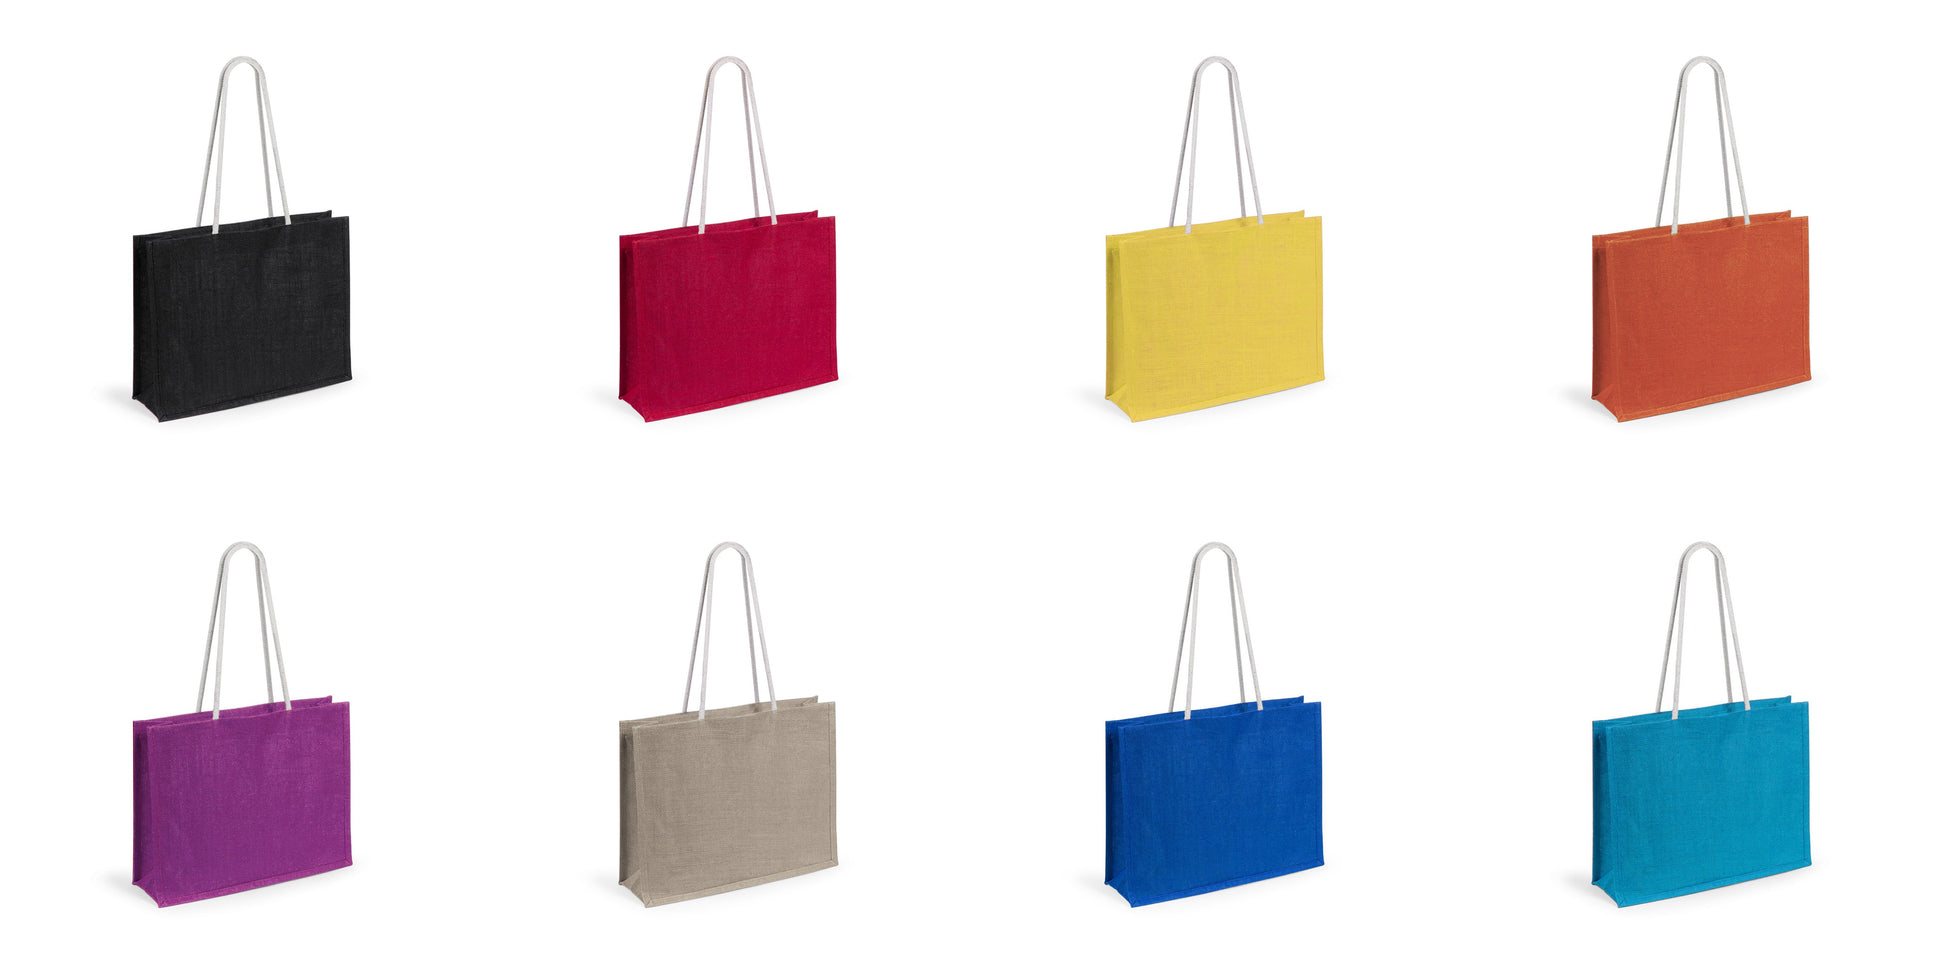 sac en toile Large sélection de couleurs éclatantes, adaptées à divers styles et préférences.